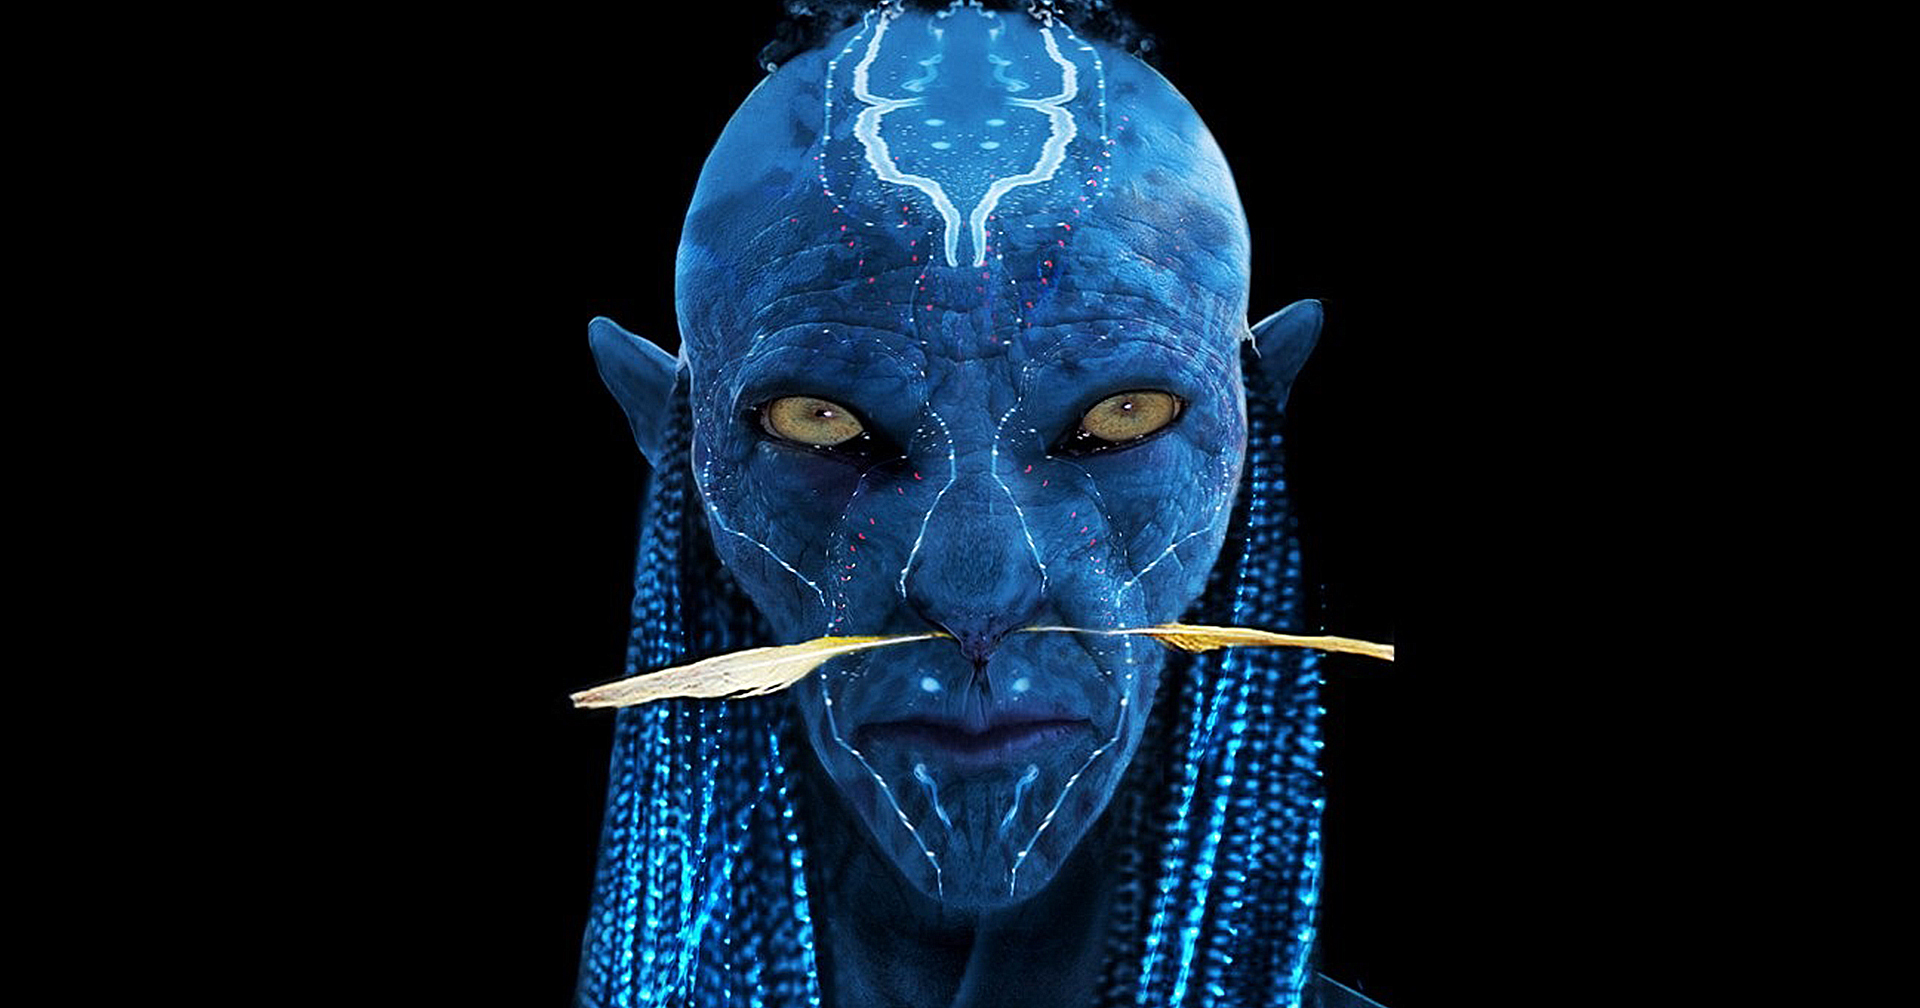 ชมภาพคอนเซ็ปต์ชาว Na’vi ดั้งเดิมของ ‘Avatar’ ที่ดูแปลกตายิ่งกว่าเดิม